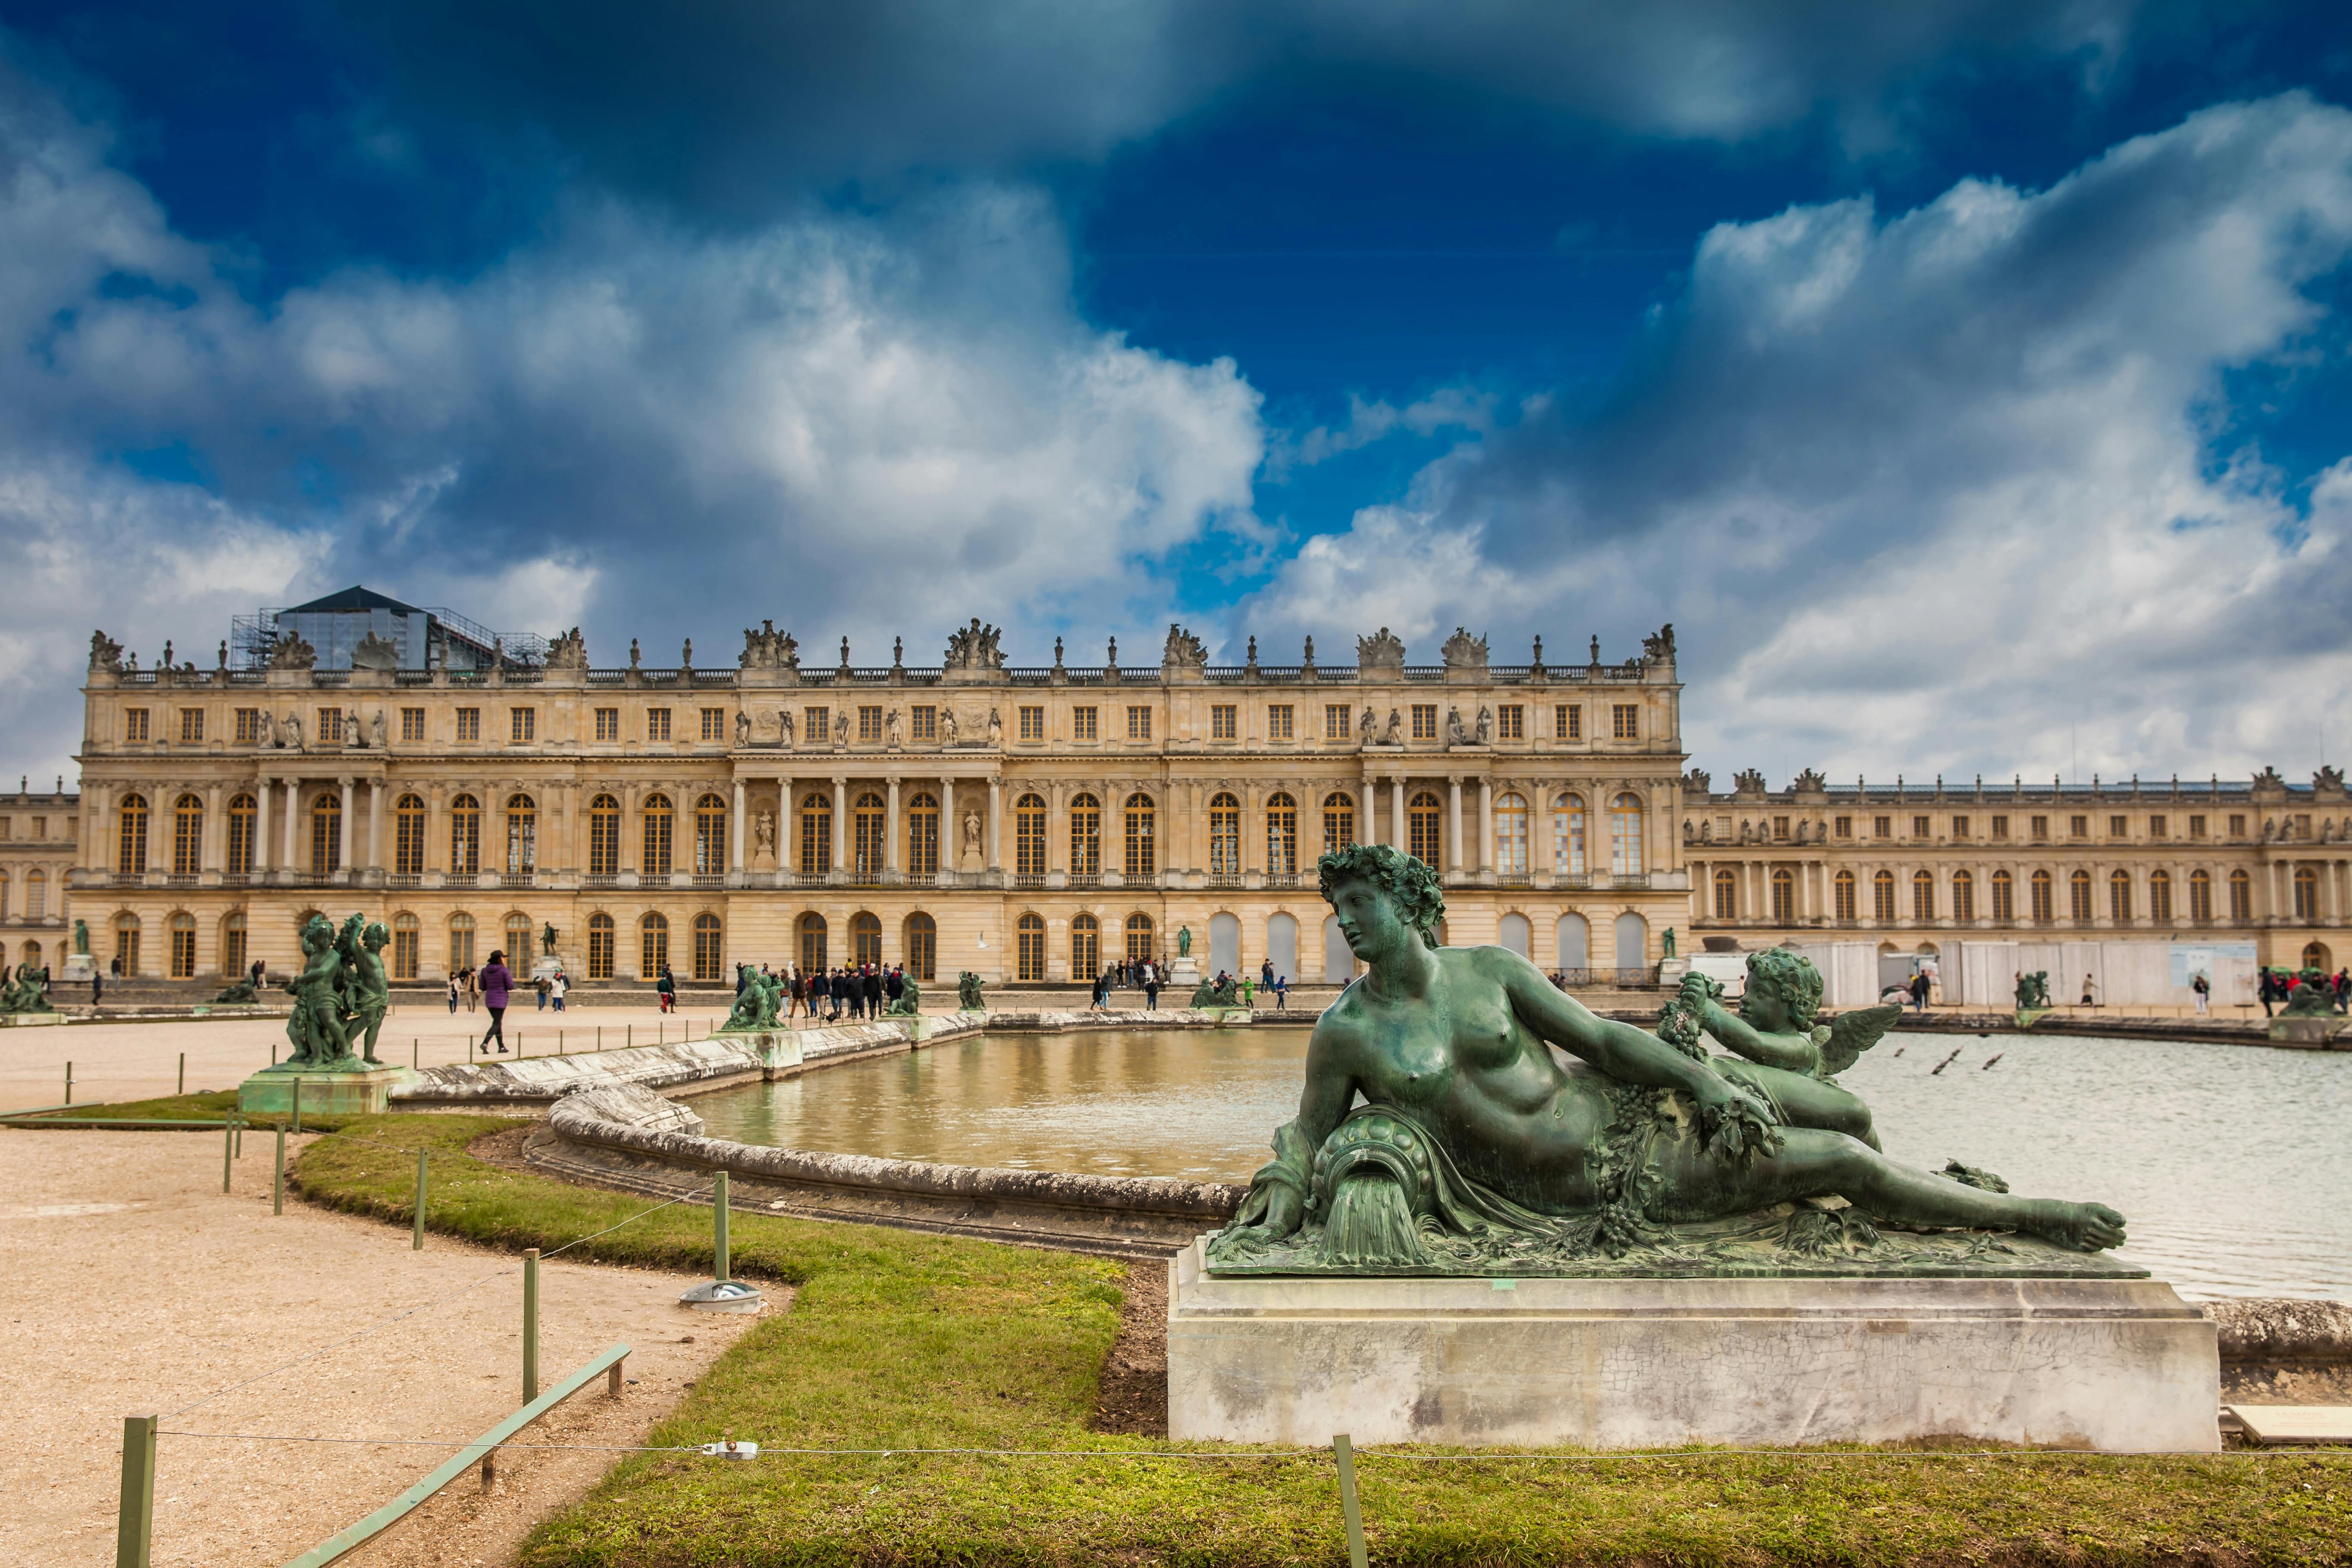 Visita guiada pelo Palácio de Versalhes sem fila